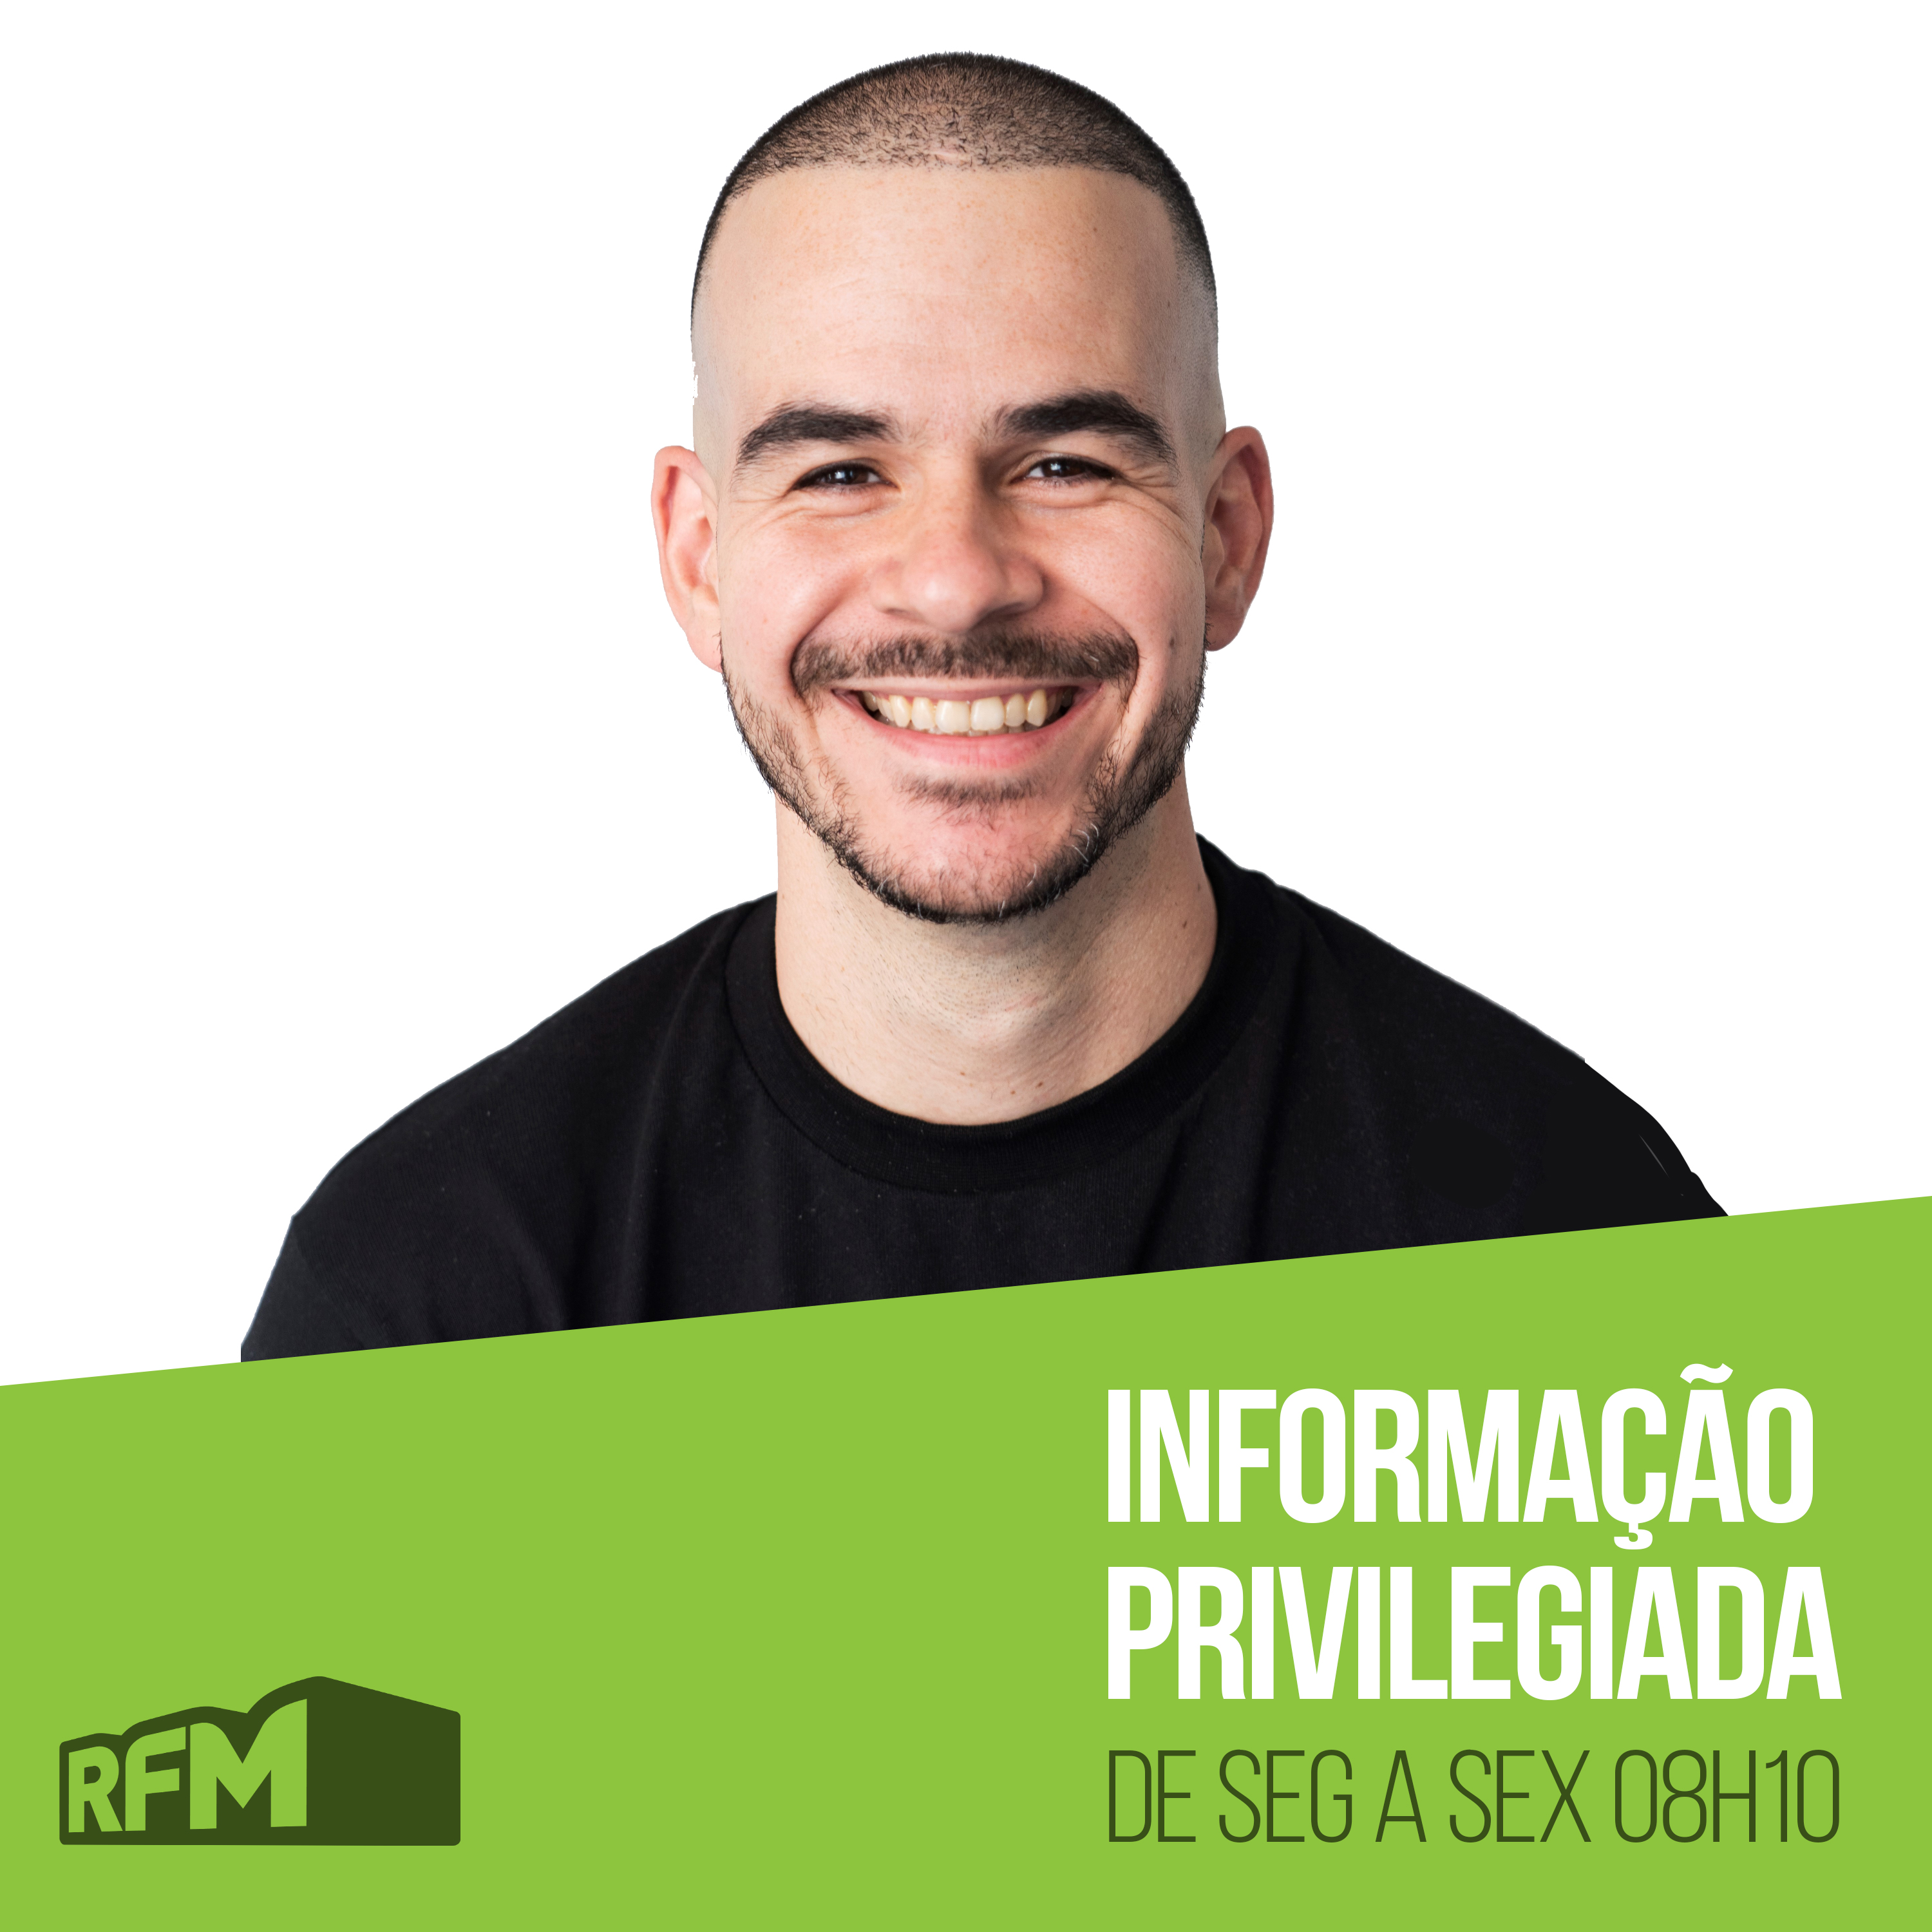 RFM - Informação Privilegiada: SURTO DE COVID EM STRIPCLUB NOS AÇORES